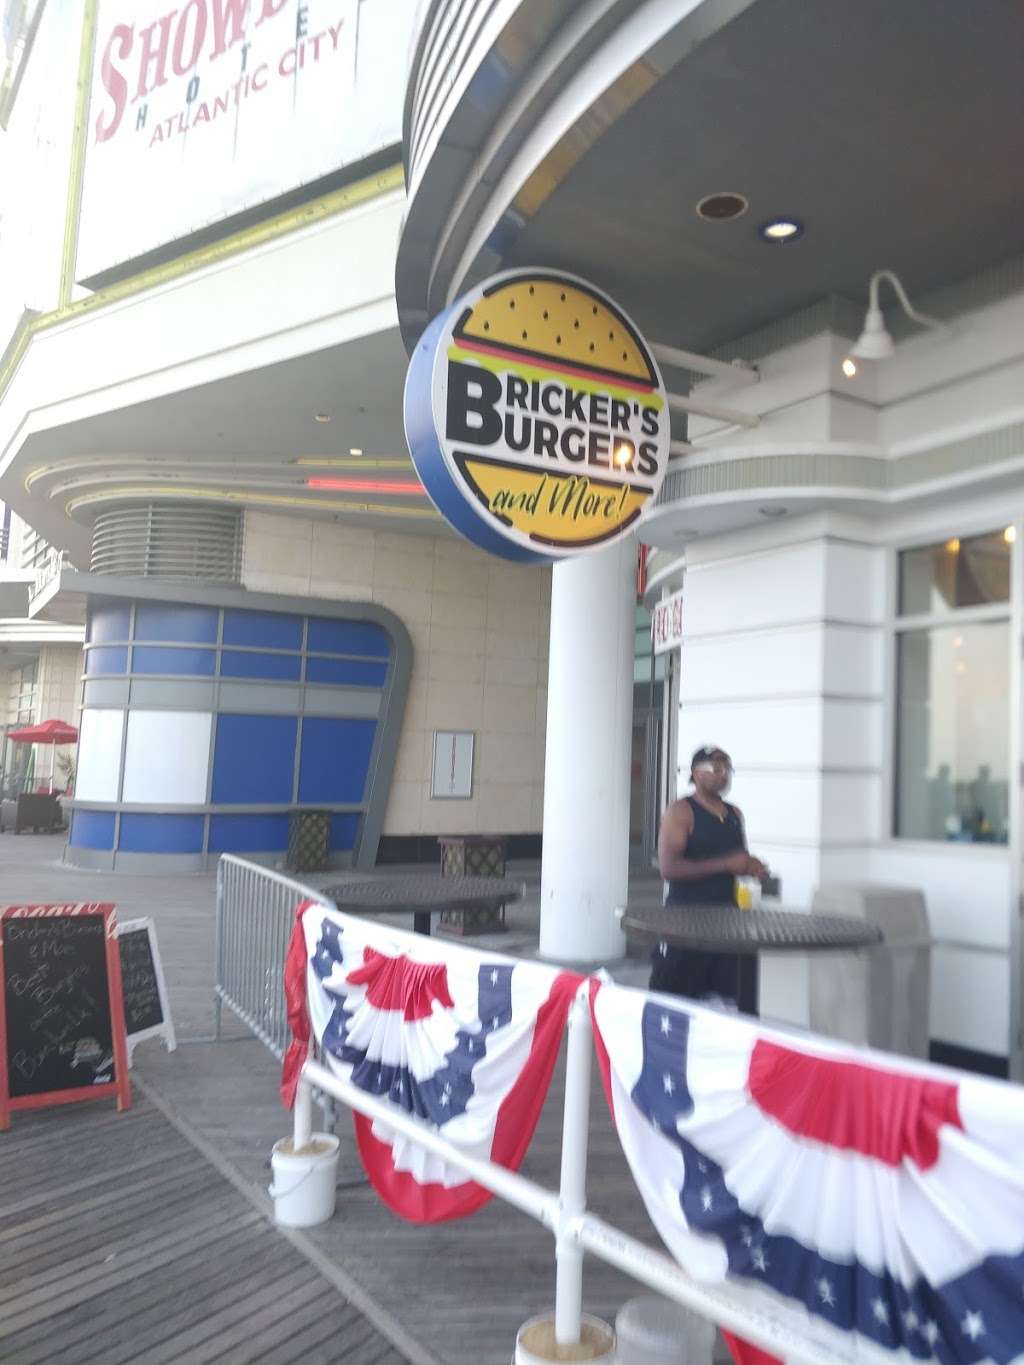 Brickers Burgers | 701-815, Boardwalk, Atlantic City, NJ 08401